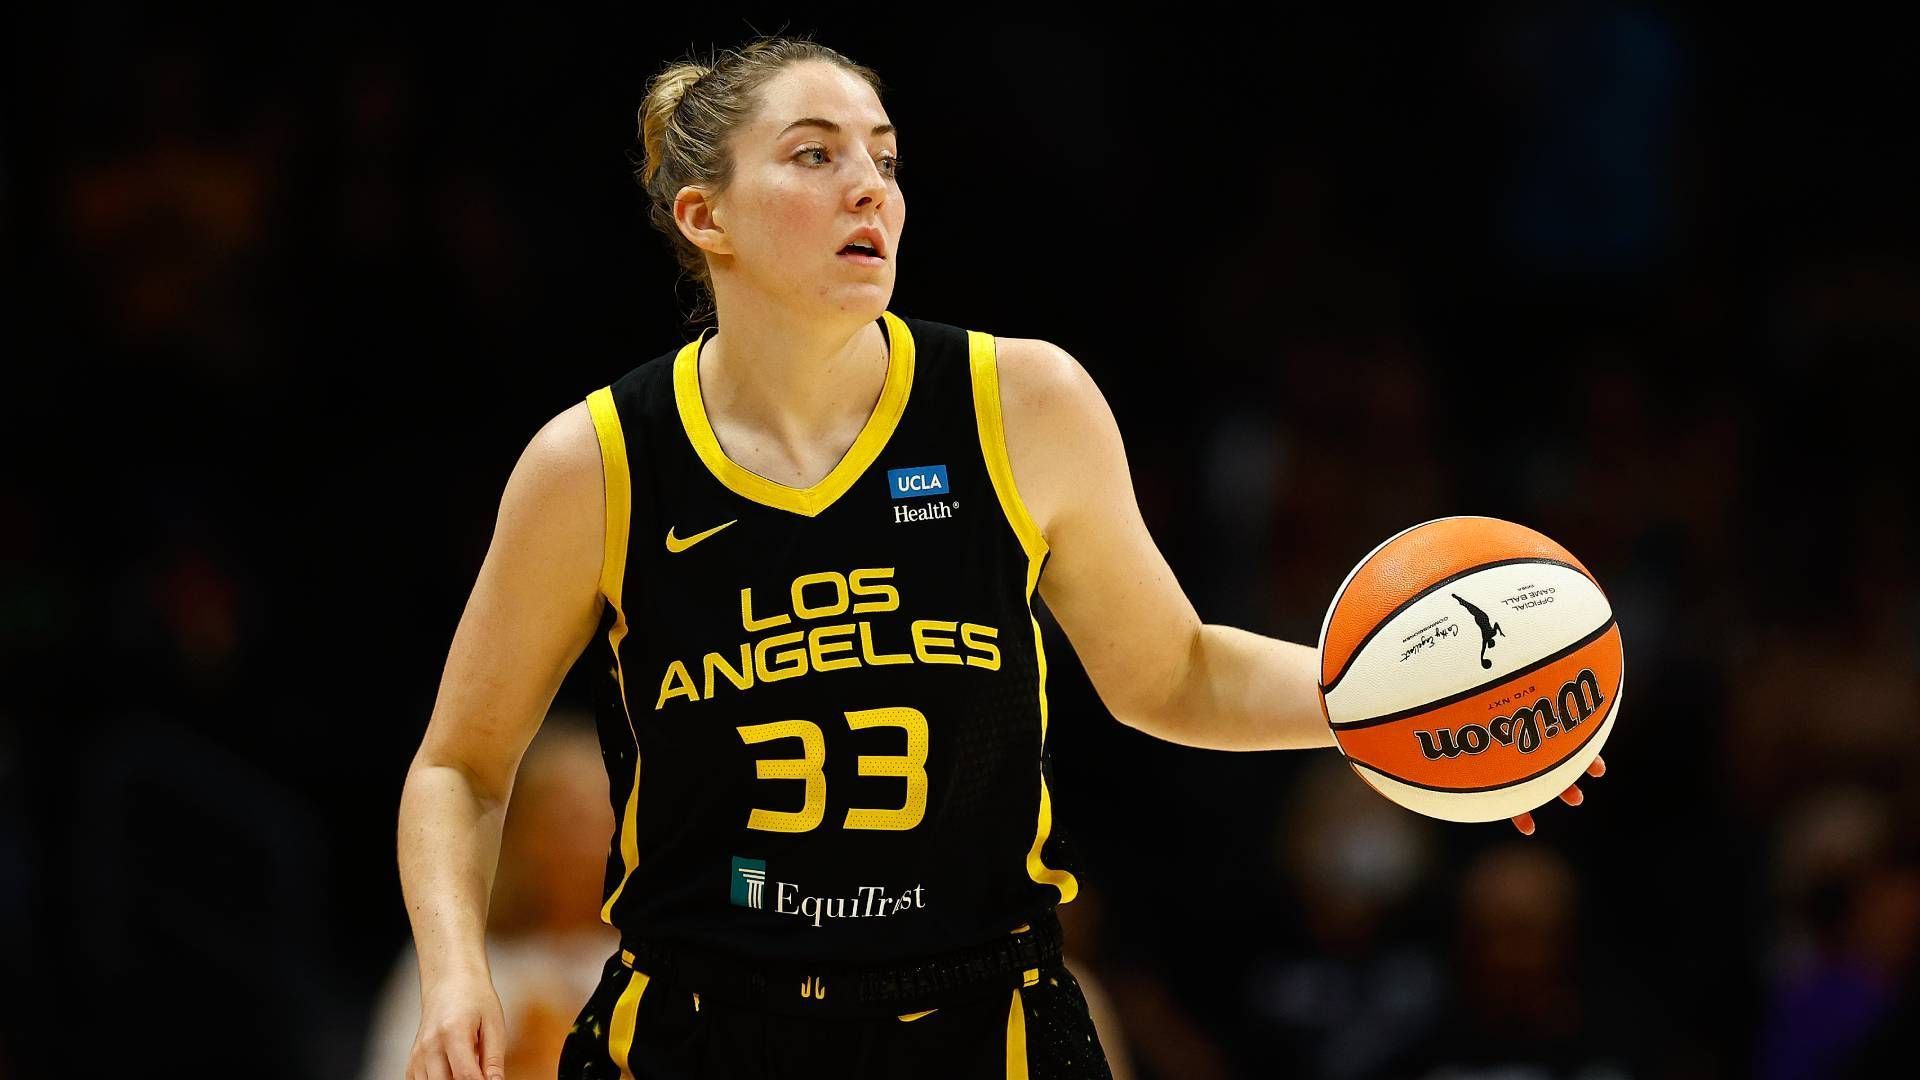 
                <strong>Los Angeles Sparks (Basketball)</strong><br>
                Die dritte Sport-Franchise aus Los Angeles, an der Boehly beteiligt ist. Die Sparks spielen in der Frauenliga WNBA und befinden sich seit 2014 im Besitz der "Sparks LA Sports"-Gruppe, zu der - Überraschung - auch Boehly und Walter gehören.
              